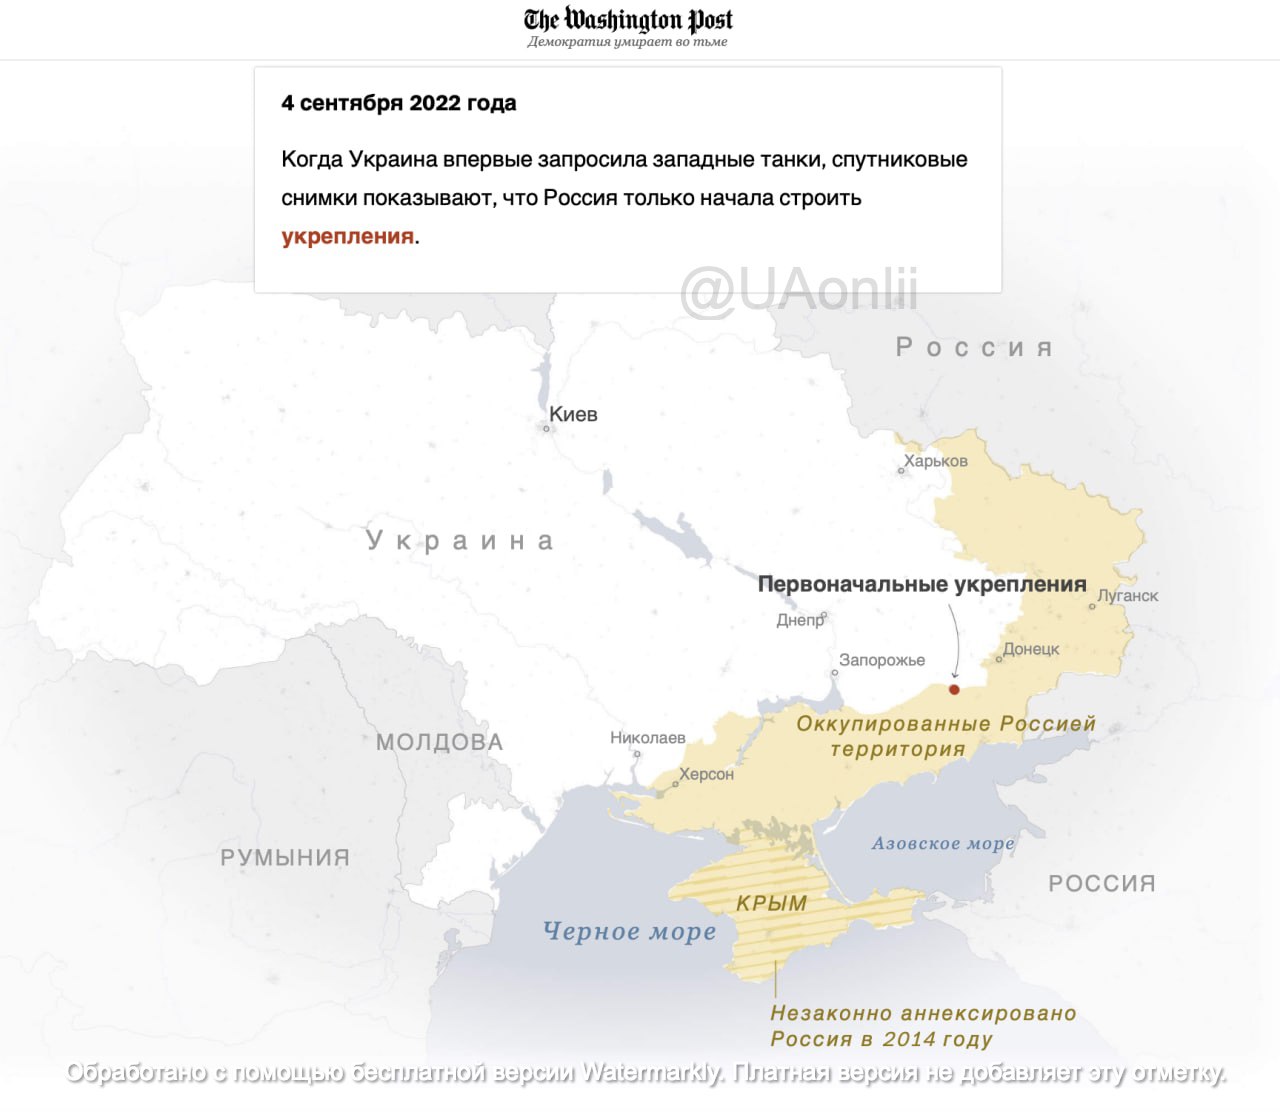 Зміни карти України показують ціну коливань союзників в прийняті рішень щодо надання допомоги, — TWP